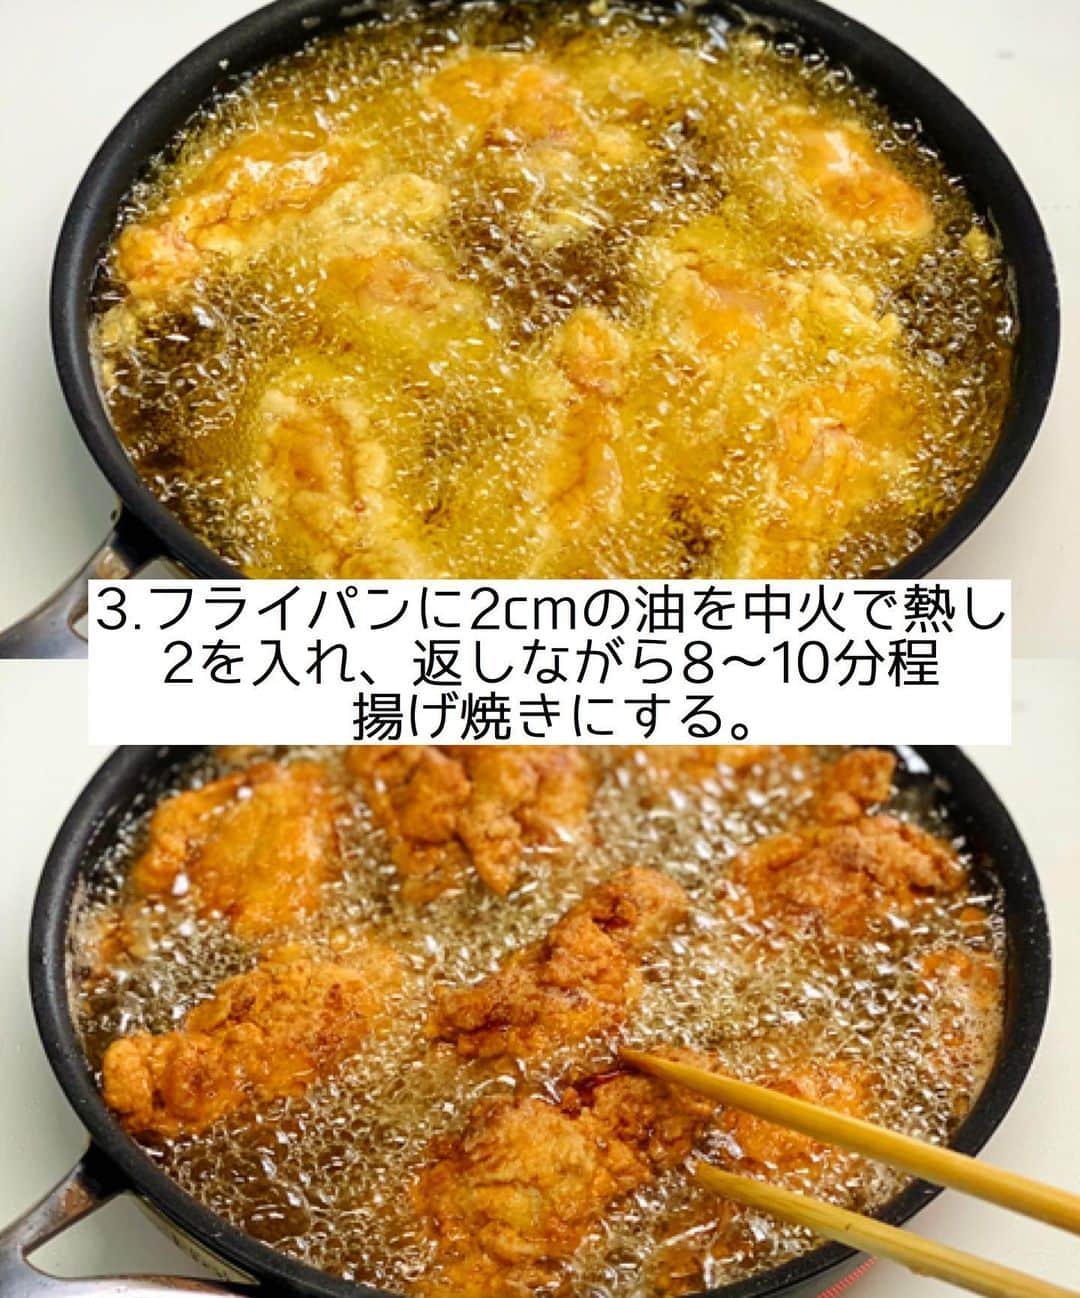 Mizuki【料理ブロガー・簡単レシピ】さんのインスタグラム写真 - (Mizuki【料理ブロガー・簡単レシピ】Instagram)「・﻿ 【#レシピ 】ーーーーーーーーーー﻿ ♡衣ザクザク♡フライドチキン♡﻿ ーーーーーーーーーーーーーーーー﻿ ﻿ ﻿ ﻿ おはようございます(*^^*)﻿ ﻿ 今日はクリスマスにもおすすめの﻿ \フライドチキン/のご紹介です♩﻿ ﻿ フライドチキンといえば﻿ 沢山のスパイスが必要•••﻿ だけどうちにはないので😂﻿ あるものだけで作りましたよ〜♩﻿ 漬け込みなしですぐできて﻿ 衣はザックザクに仕上がります♡﻿ ﻿ 今回は手羽元を使用しましたが﻿ もも肉やむね肉で作ってもOK！﻿ クリスマスメニューにぴったりなので﻿ よかったらお試し下さいね(*^^*)﻿ ﻿ ﻿ ﻿ ＿＿＿＿＿＿＿＿＿＿＿＿＿＿＿＿＿＿＿＿﻿ 【作りやすい量】﻿ 手羽元...8〜10本﻿ ●卵...1個﻿ ●薄力粉...大6﻿ ●醤油・みりん...各大1.5﻿ ●塩...小1/2﻿ ●カレー粉...小1/8﻿ 片栗粉・サラダ油...各適量﻿ ﻿ 1.手羽元は骨に沿って2本(深く)切り込みを入れる。﻿ 2.ボウルに●を入れてよく混ぜ、1を加えてからめ、1本ずつしっかり片栗粉をまぶす。﻿ 3.フライパンに2cmの油を入れて中火で熱し、2を入れ、返しながら8〜10分程揚げ焼きにする。﻿ ￣￣￣￣￣￣￣￣￣￣￣￣￣￣￣￣￣￣￣￣﻿ ﻿ ﻿ ﻿ 《ポイント》﻿ ♦︎手羽元は深く切り込みを入れ、身を開くようにすると火が通りやすくなります♩﻿ ♦︎衣はたっぷりからめ、片栗粉はしっかりまぶして下さい♩﻿ ♦︎油の温度設定ができる場合は170度にして下さい♩﻿ ♦︎もも肉やむね肉の場合は揚げ時間を短めにして下さい♩﻿ ﻿ ﻿ ﻿ ﻿ ﻿ ﻿ ﻿ ﻿ ﻿ 📕新刊予約開始しました📕﻿ 【ラクしておいしい！#1品晩ごはん 】﻿ ￣￣￣￣￣￣￣￣￣￣￣￣￣￣￣￣￣﻿ 私たちだってヘトヘトな日がある•••﻿ 毎日何品も作っていられない•••﻿ もうごはんに悩みたくない😢﻿ そう思うことってありませんか？﻿ そんな時、1品ごはんはいかがでしょう？﻿ というご提案です✨﻿ ﻿ ﻿ 【1品ごはん】は﻿ 副菜いらずで全てがシンプル！﻿ ￣￣￣￣￣￣￣￣￣￣￣￣￣￣￣￣￣￣﻿ 一品つくるだけでいいから﻿ 献立を考えなくてよし！﻿ ￣￣￣￣￣￣￣￣￣￣￣￣￣￣￣￣￣￣﻿ 悩まない、疲れない、﻿ 気力や時間がなくてもなんとかなる！﻿ ￣￣￣￣￣￣￣￣￣￣￣￣￣￣￣￣￣￣﻿ そんな頼りになる﻿ 便利なお助けごはんです☺️💕﻿ (ハイライトに🔗貼っています✨)﻿ ￣￣￣￣￣￣￣￣￣￣￣￣￣￣￣￣￣﻿ ﻿ ﻿ ﻿ ﻿ ﻿ ⭐️発売中⭐️﻿ ＿＿＿＿＿＿＿＿＿＿＿＿＿＿＿＿＿＿﻿ しんどくない献立、考えました♩﻿ \15分でいただきます/﻿ 📕#Mizukiの2品献立 📕﻿ ﻿ 和食をもっとカジュアルに♩﻿ \毎日のごはんがラクになる/﻿ 📘#Mizukiの今どき和食 📘﻿ ﻿ ホケミレシピの決定版♩﻿ \はじめてでも失敗しない/﻿ 📙#ホットケーキミックスのお菓子 📙﻿ ﻿ NHKまる得マガジンテキスト☆﻿ ホットケーキミックスで﻿ 📗絶品おやつ&意外なランチ📗﻿ ￣￣￣￣￣￣￣￣￣￣￣￣￣￣￣￣￣￣﻿ ﻿ ﻿ ﻿ ＿＿＿＿＿＿＿＿＿＿＿＿＿＿＿＿＿＿﻿ レシピを作って下さった際や﻿ レシピ本についてのご投稿には﻿ タグ付け( @mizuki_31cafe )して﻿ お知らせいただけると嬉しいです😊💕﻿ ￣￣￣￣￣￣￣￣￣￣￣￣￣￣￣￣￣￣﻿ ﻿ ﻿ ﻿ ﻿ #フライドチキン#クリスマス#チキン#Mizuki#簡単レシピ#時短レシピ#節約レシピ#料理#フーディーテーブル#マカロニメイト#おうちごはん#デリスタグラマー#料理好きな人と繋がりたい#食べ物#料理記録#おうちごはんlover#写真好きな人と繋がりたい#foodpic#cooking#recipe#lin_stagrammer#foodporn#yummy#f52grams#フライドチキンm」12月14日 7時05分 - mizuki_31cafe